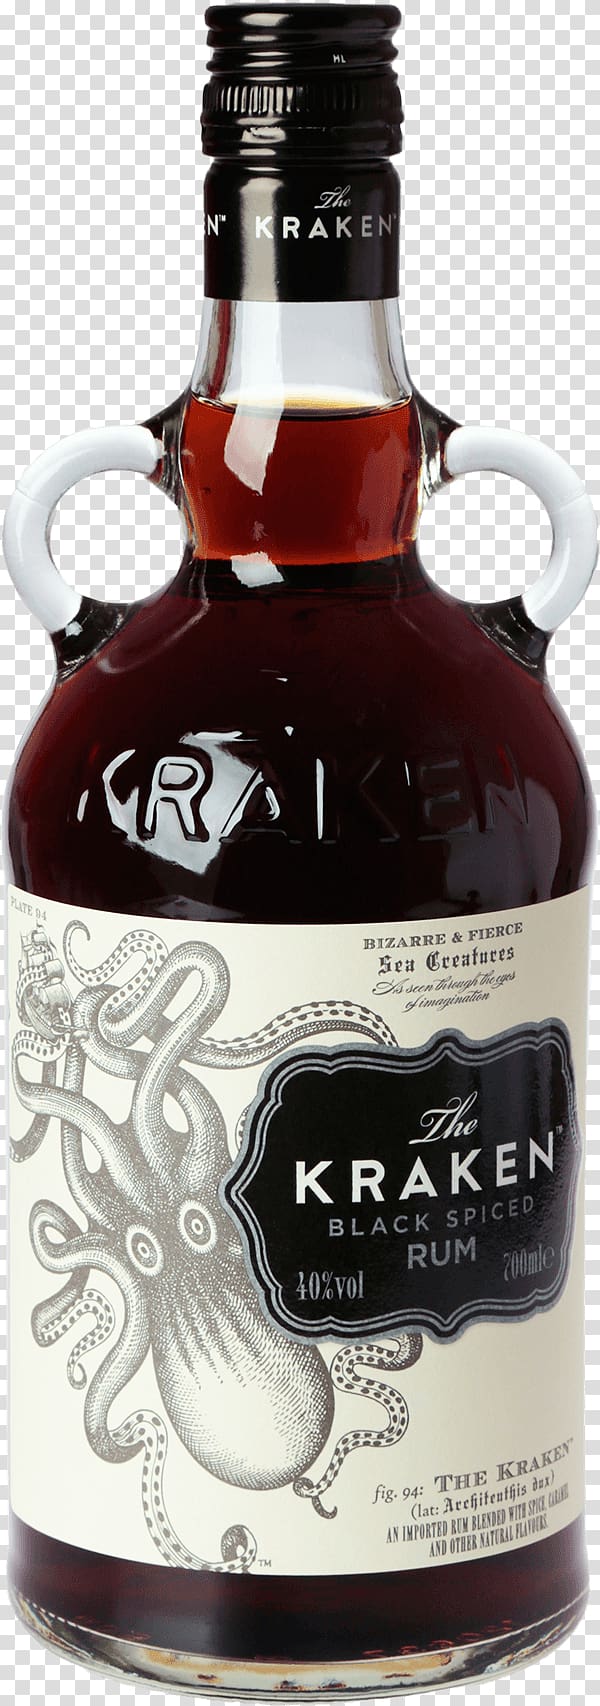 Liqueur Kraken Rum Wine Distilled beverage, wine transparent background PNG clipart